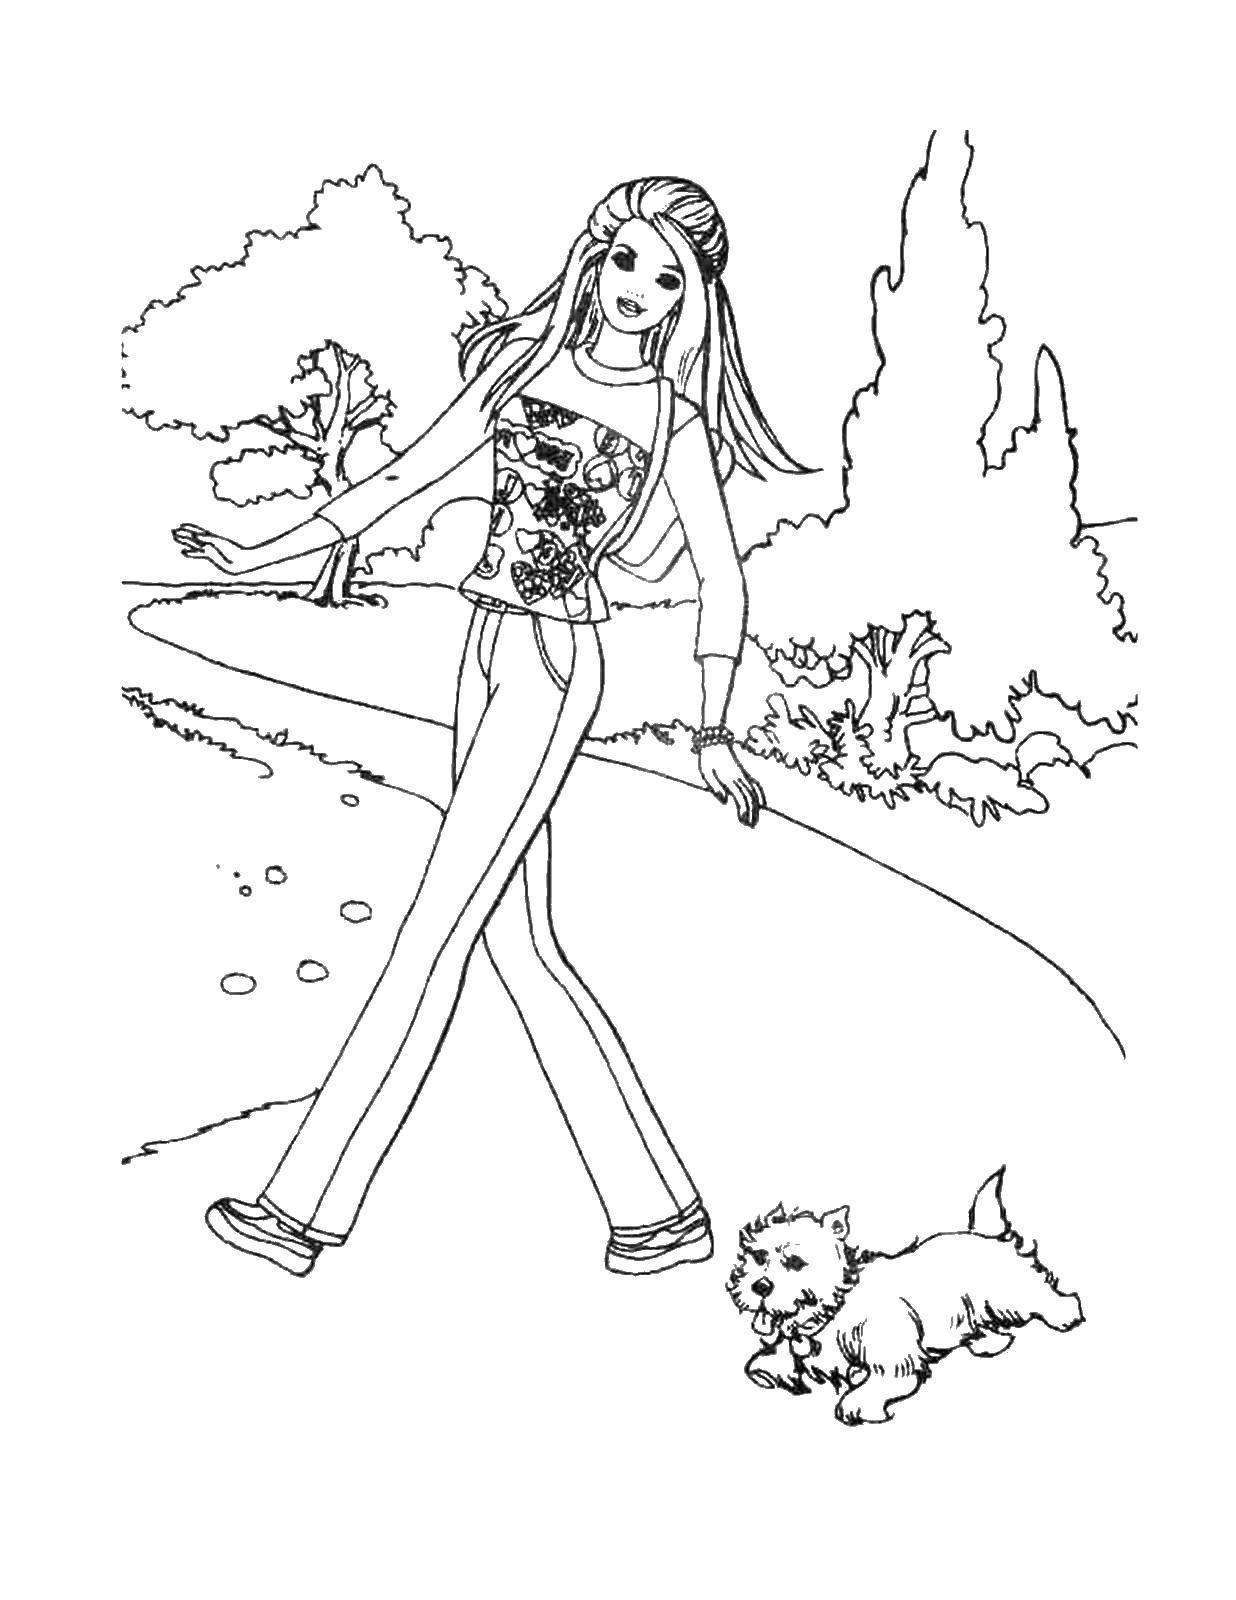 Название: Раскраска Барби на прогулке с щенком. Категория: Барби. Теги: Барби, прогулка, щенок.